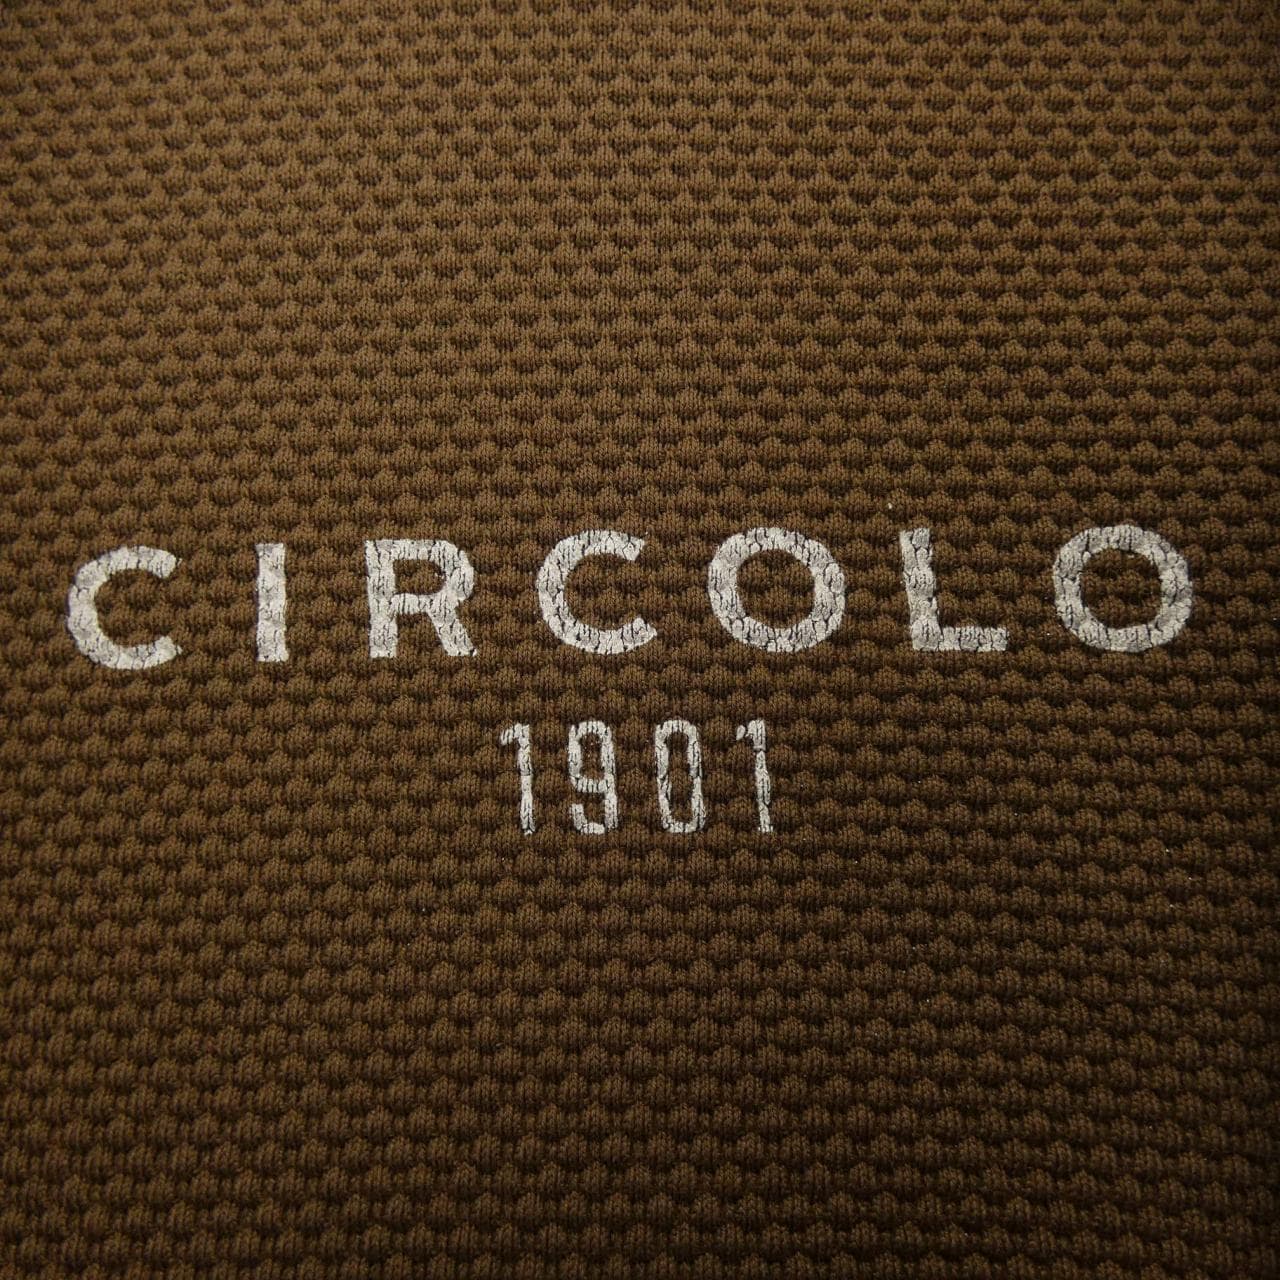 チルコロ 1901 CIRCOLO 1901 ジャケット